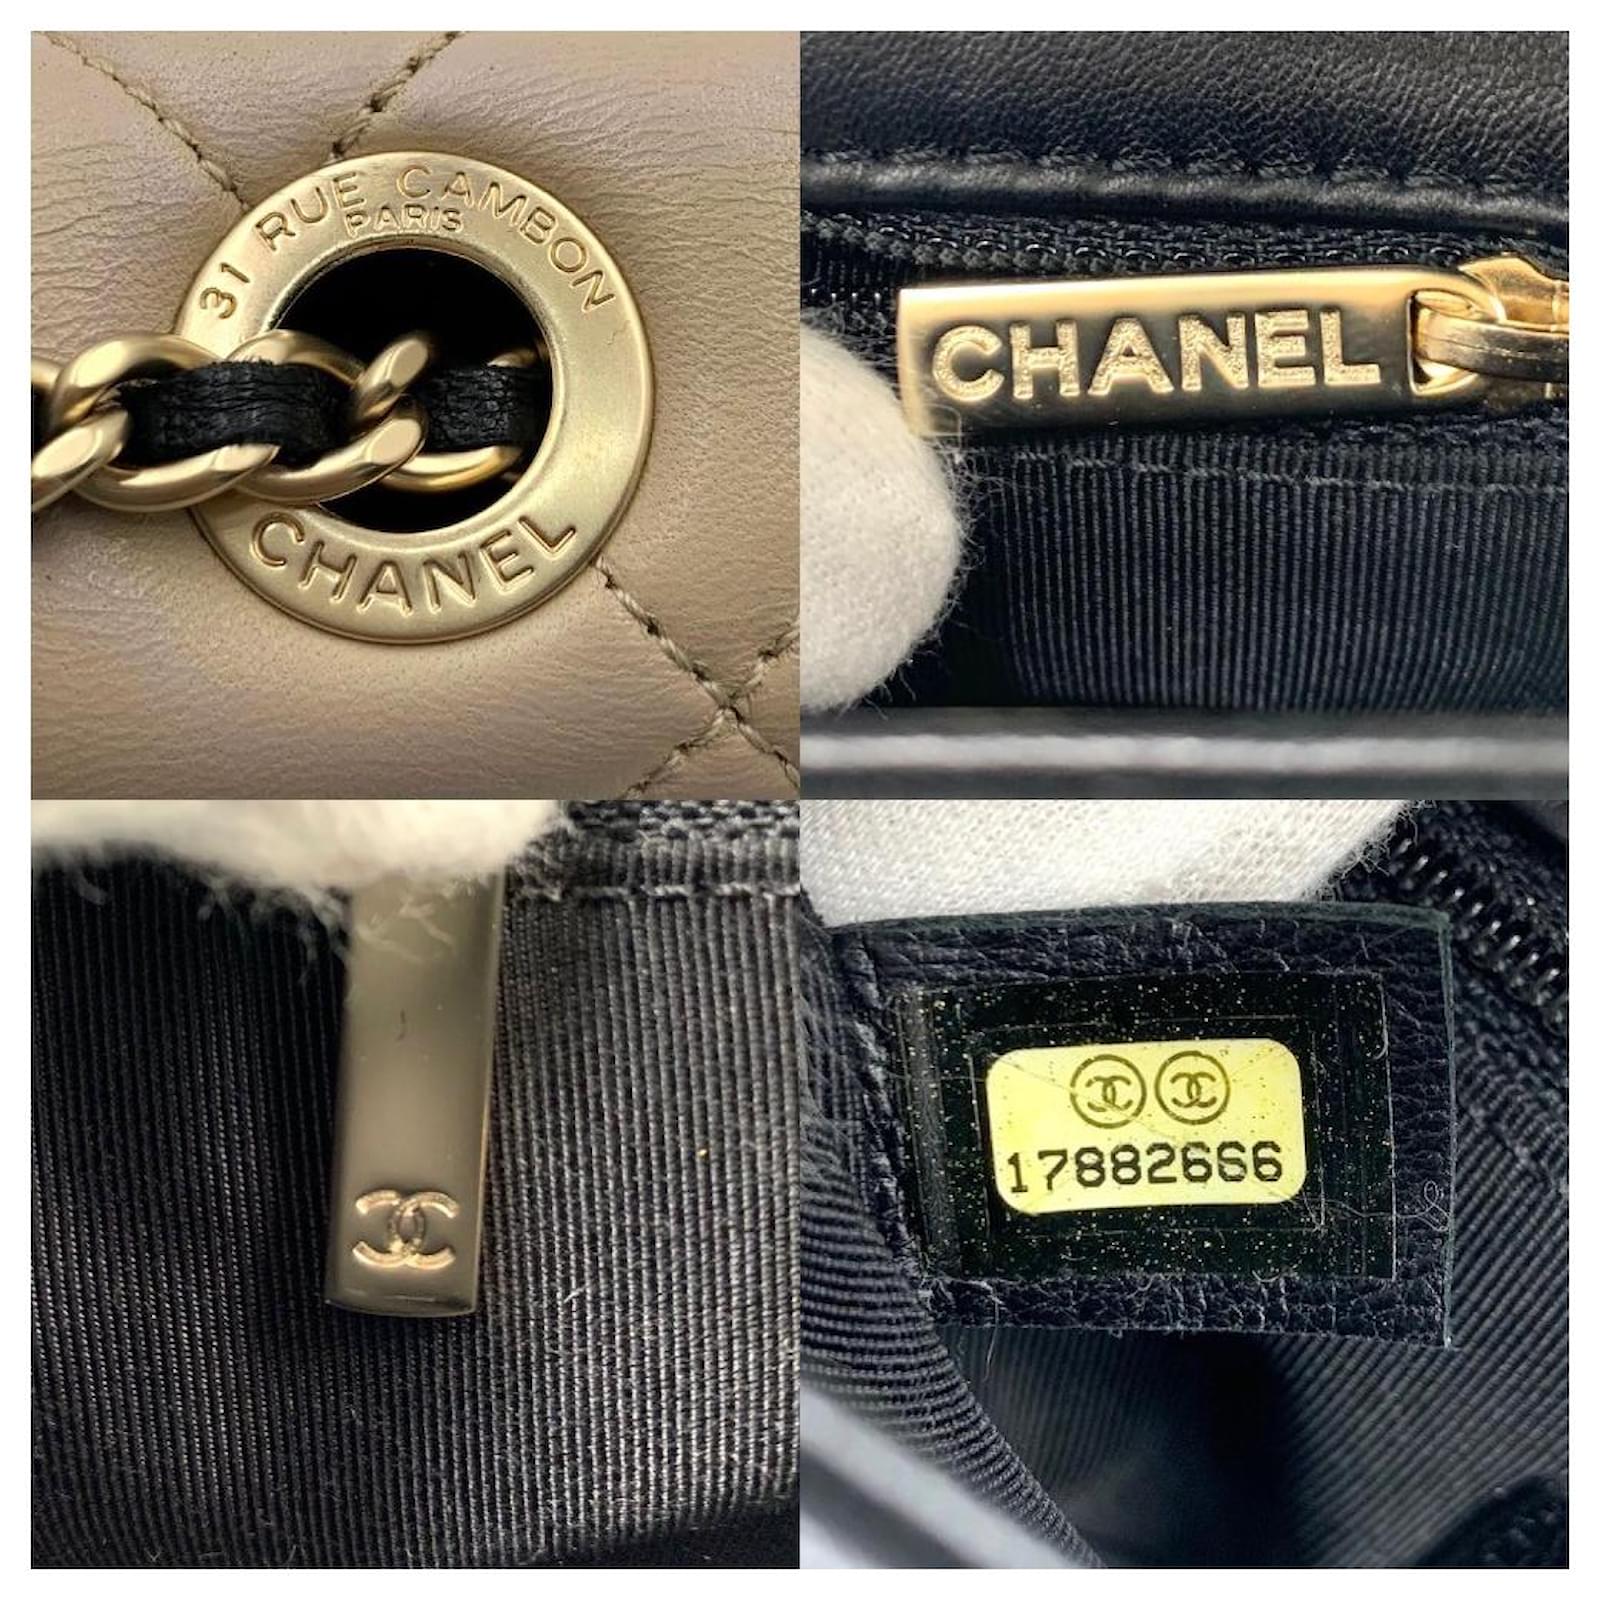 *Chanel shoulder bag ladies' beige black gold matelasse bicolor